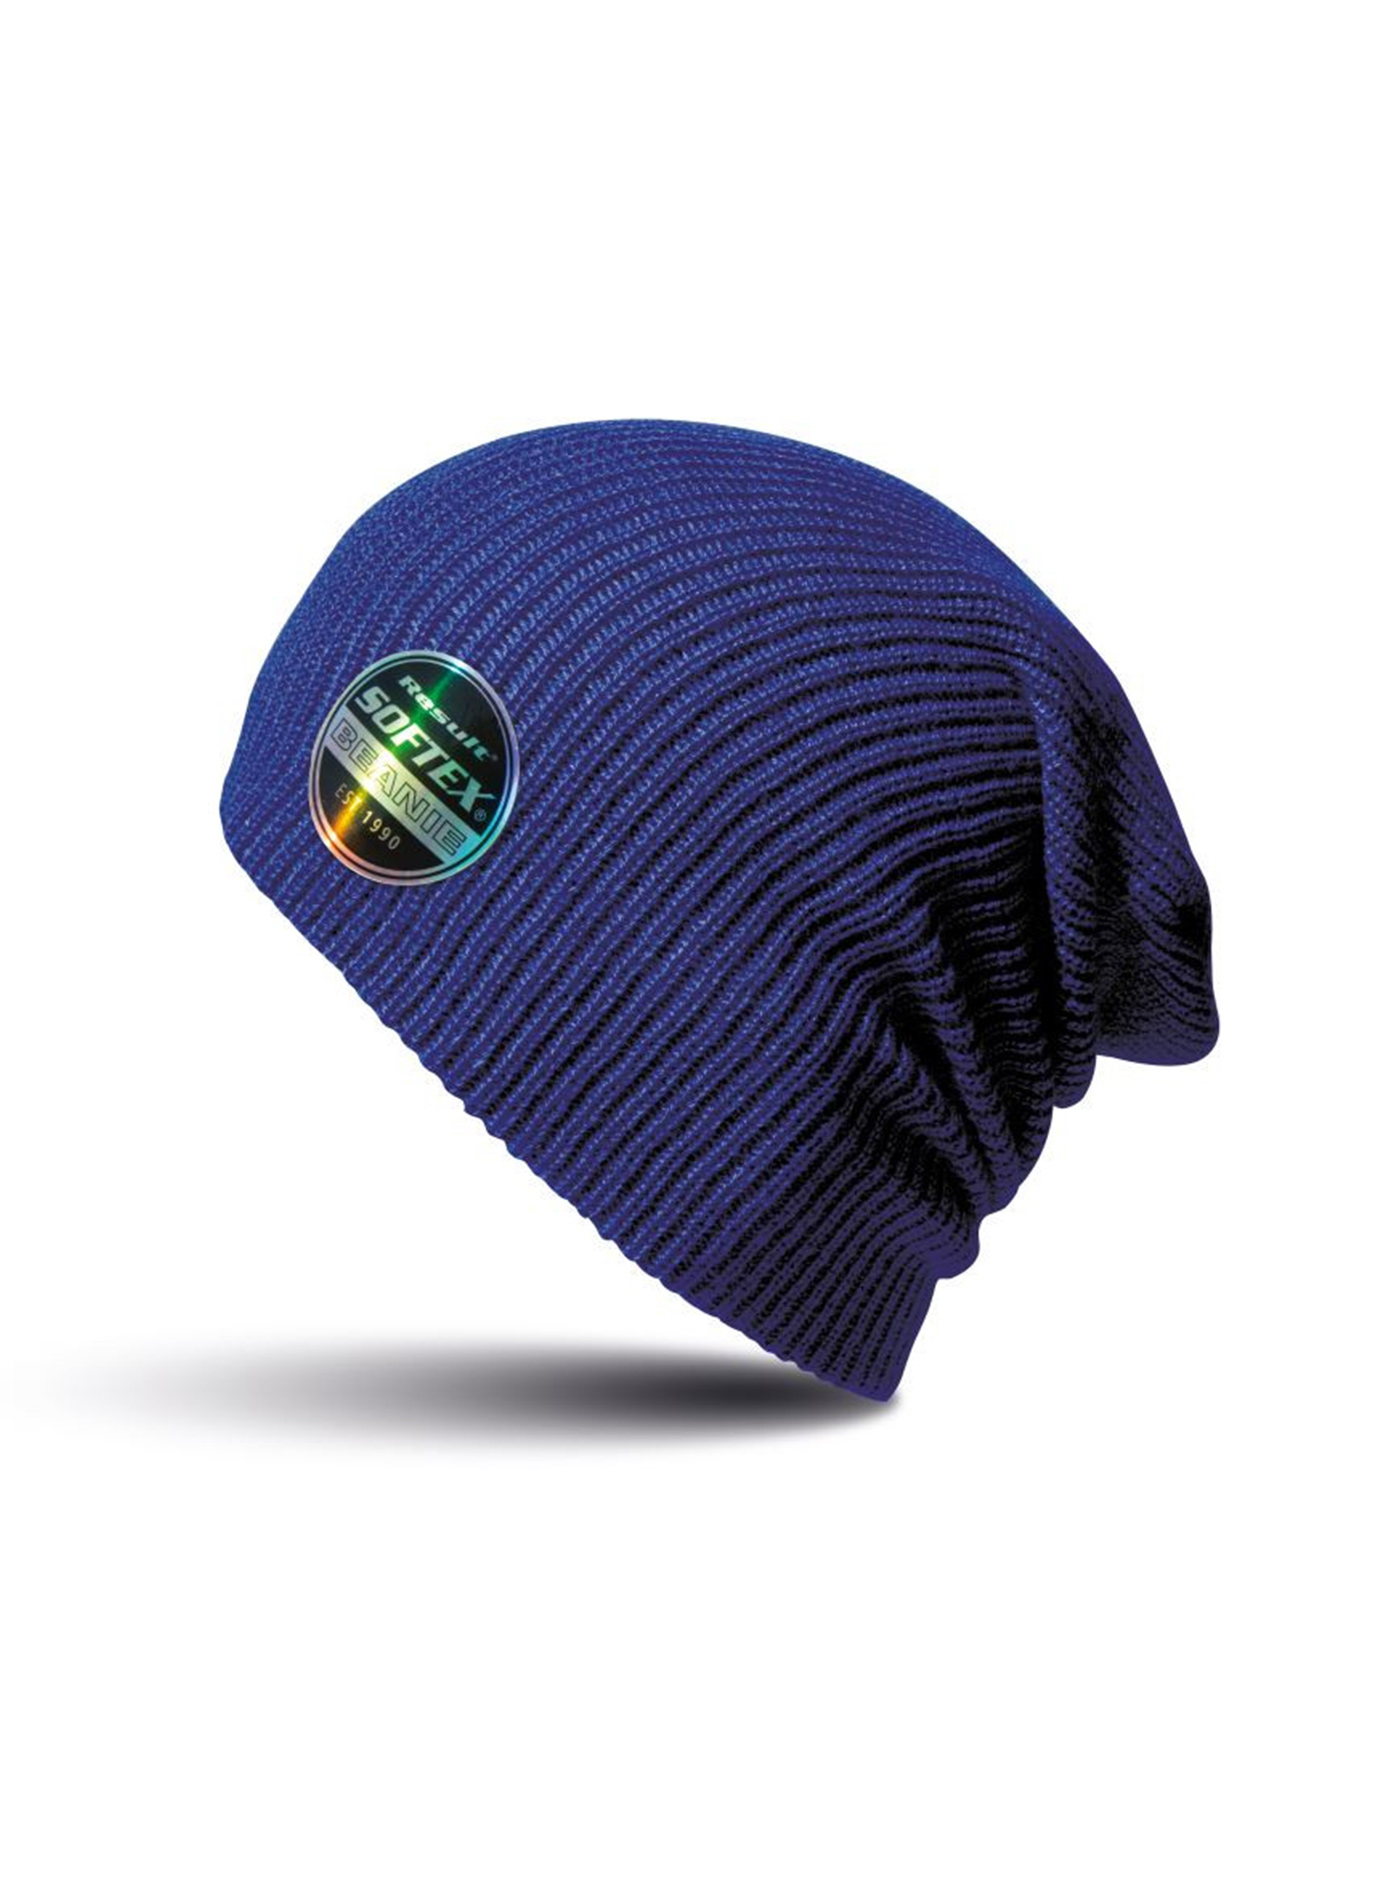 Čepice Result headwear softex beanie - Královská modrá univerzal